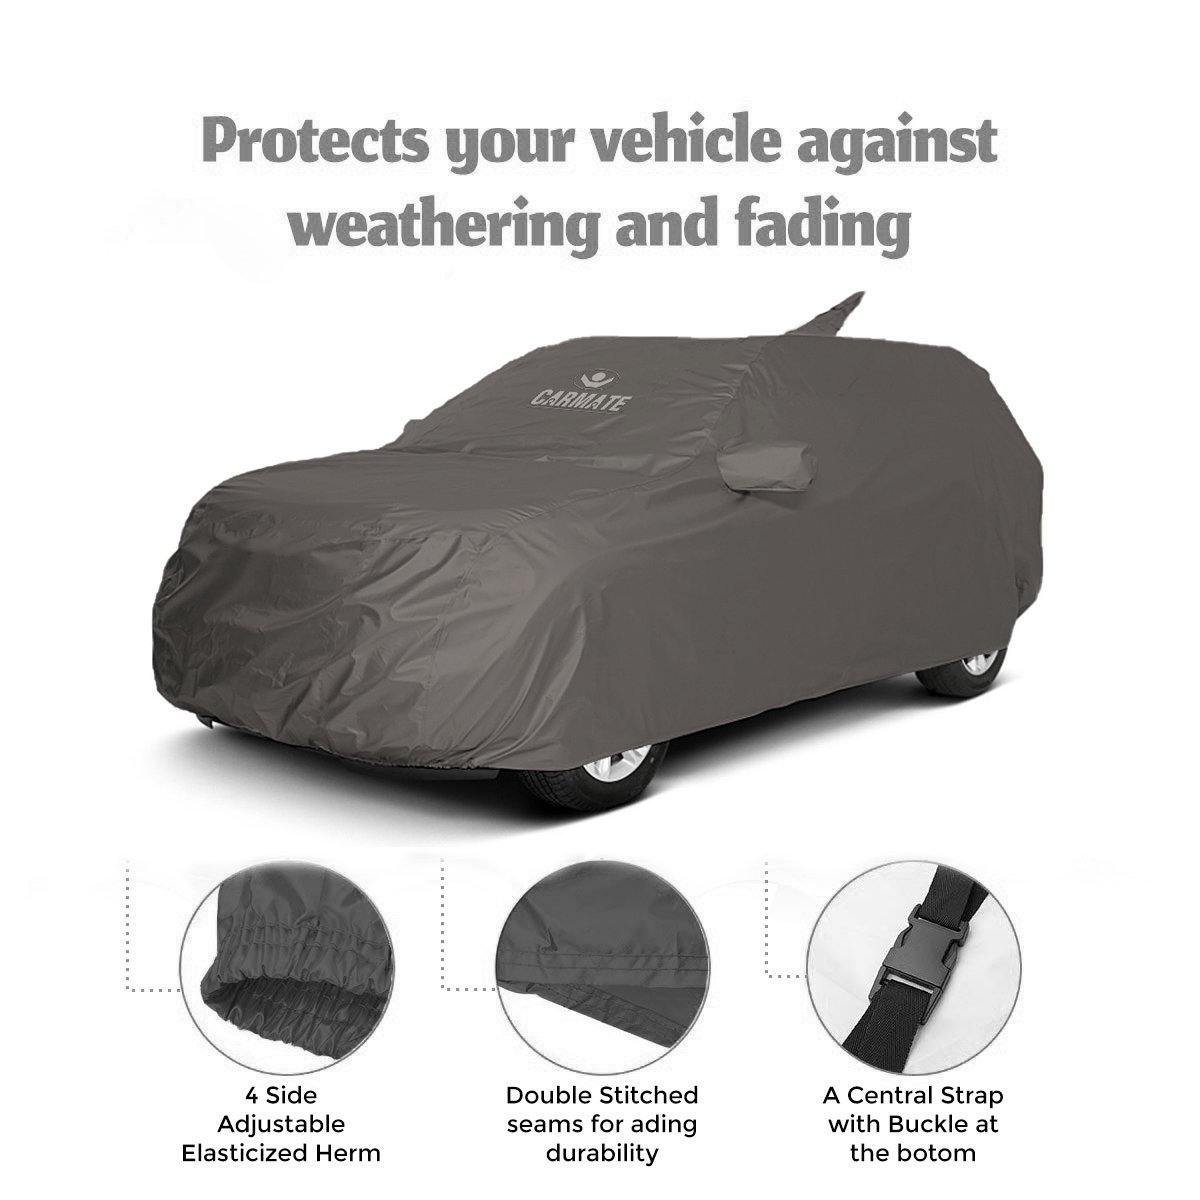 Carmate Car Body Cover 100% Waterproof Pride (Grey) for Audi - Q3 - CARMATE®